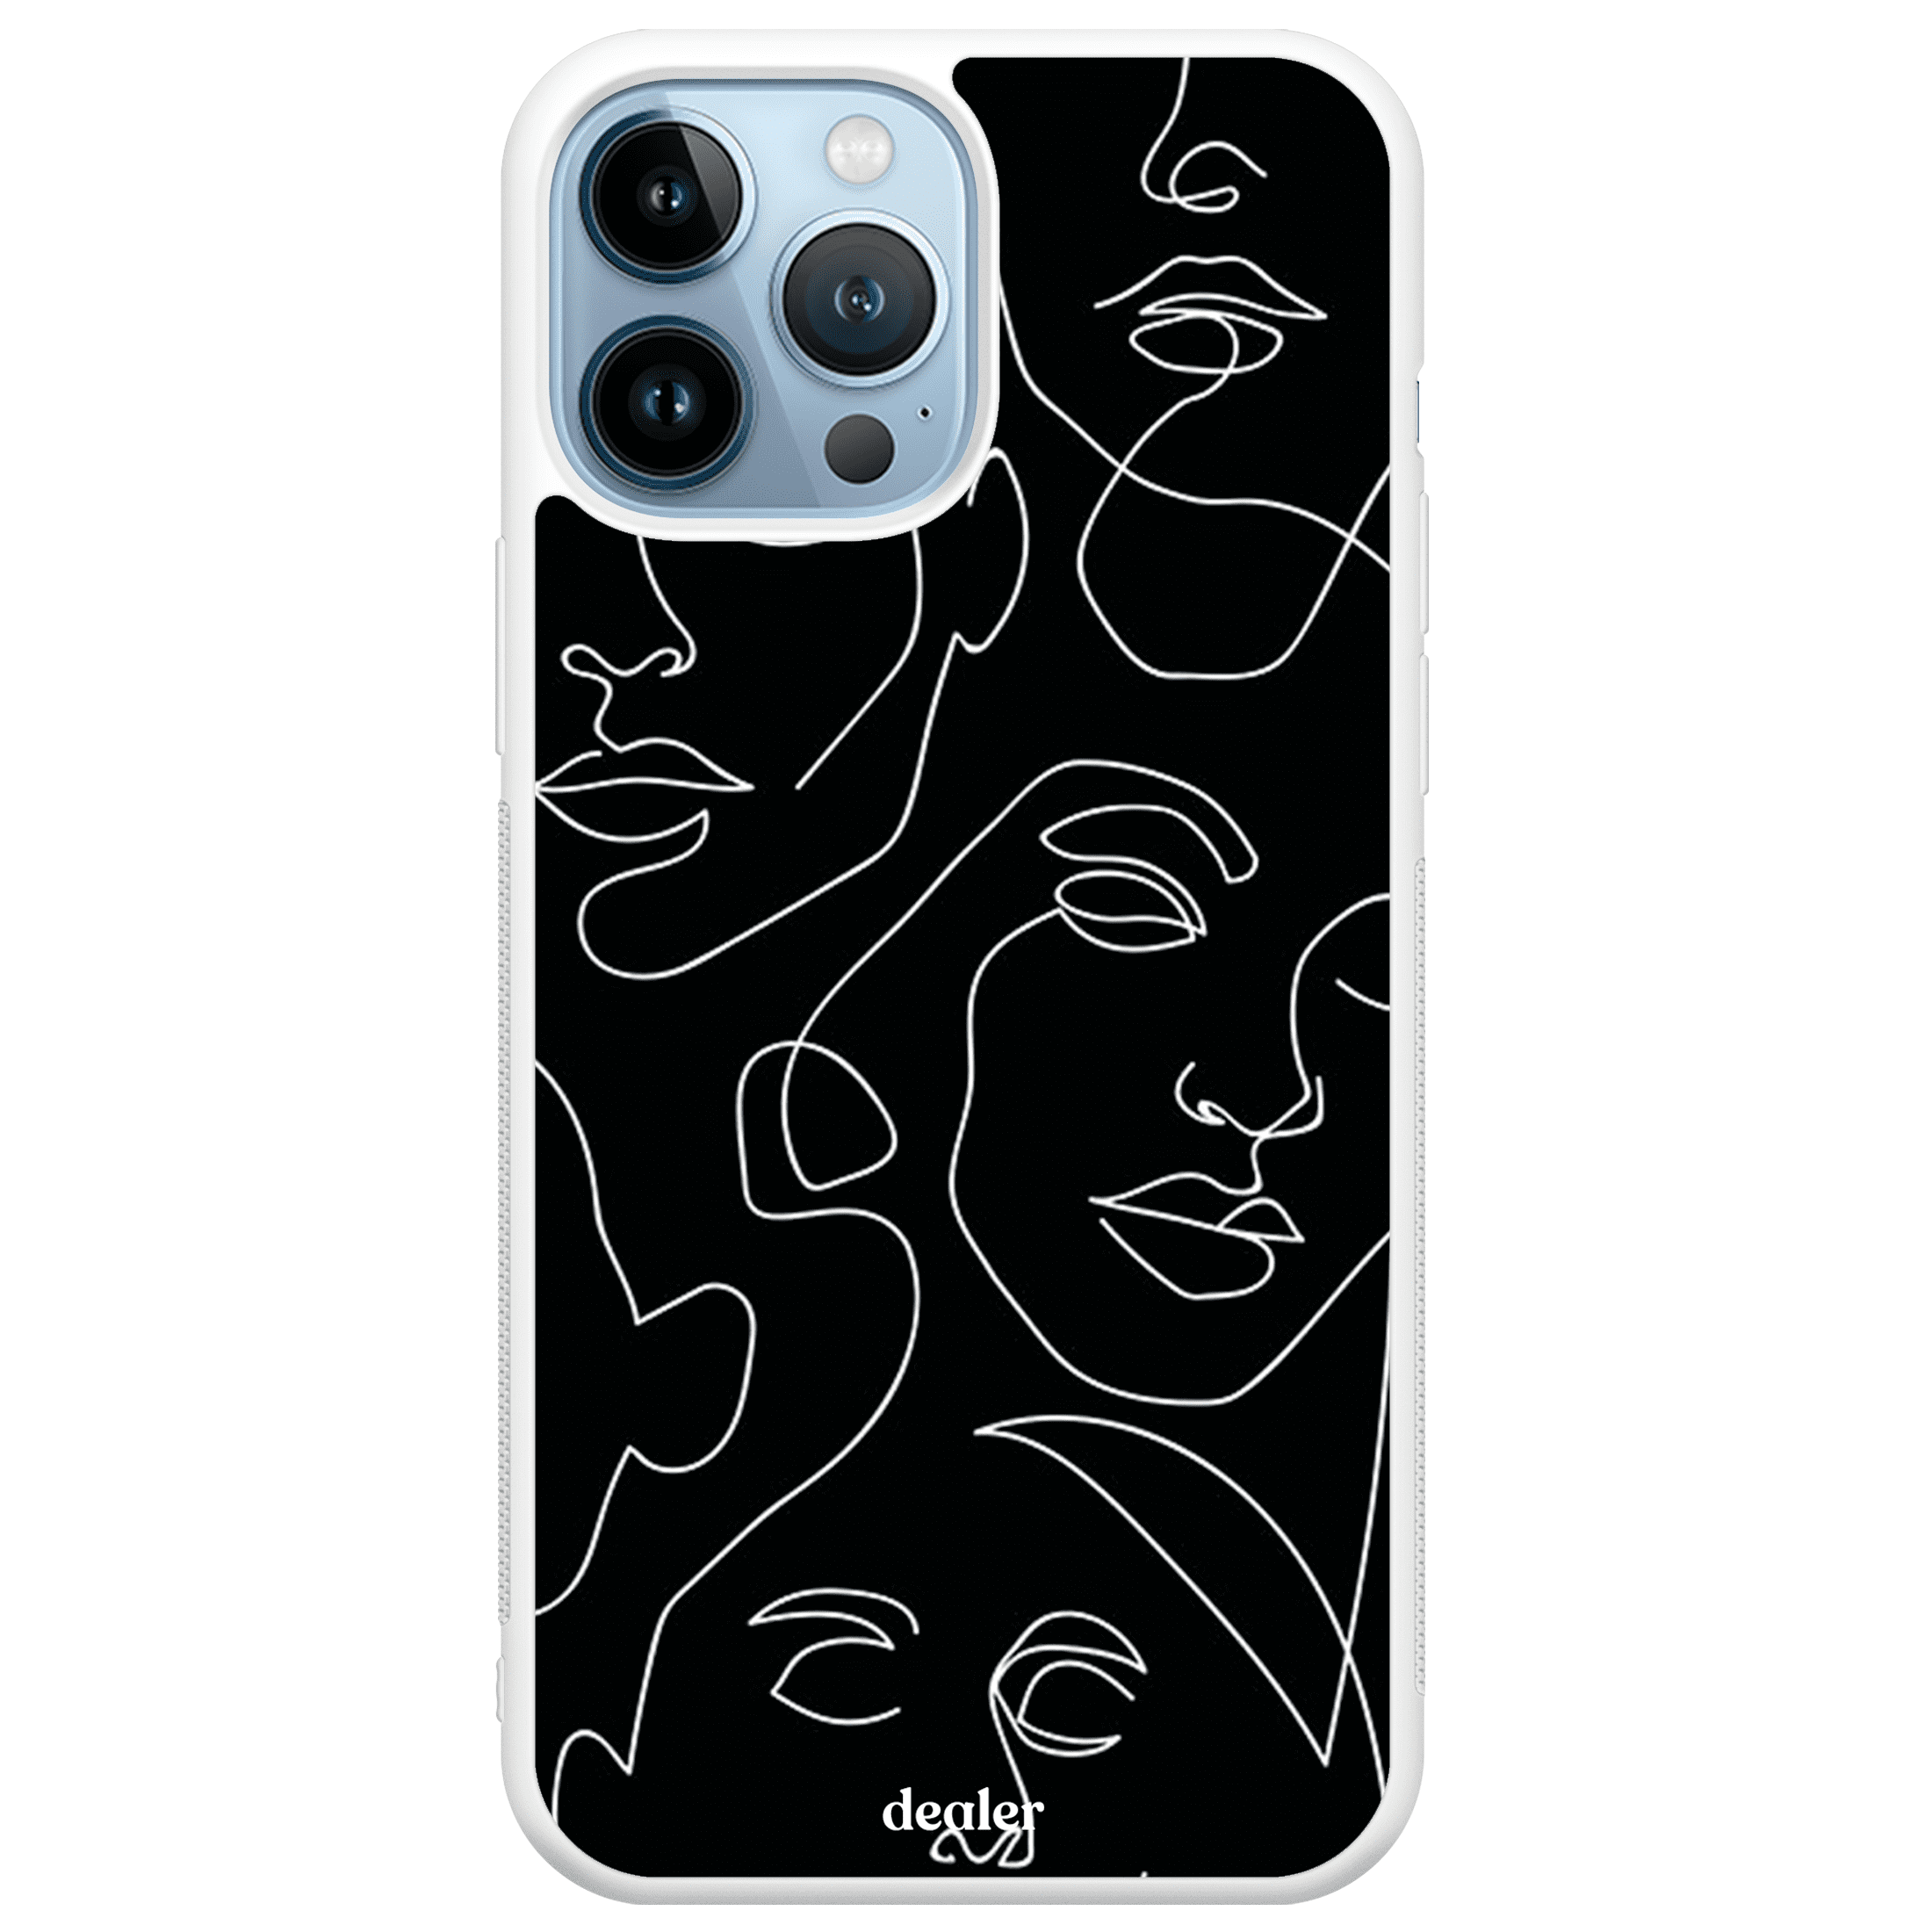 Coque de téléphone avec des visages dessinés, coque en silicone renforcé modèle Visage Dealer de coque